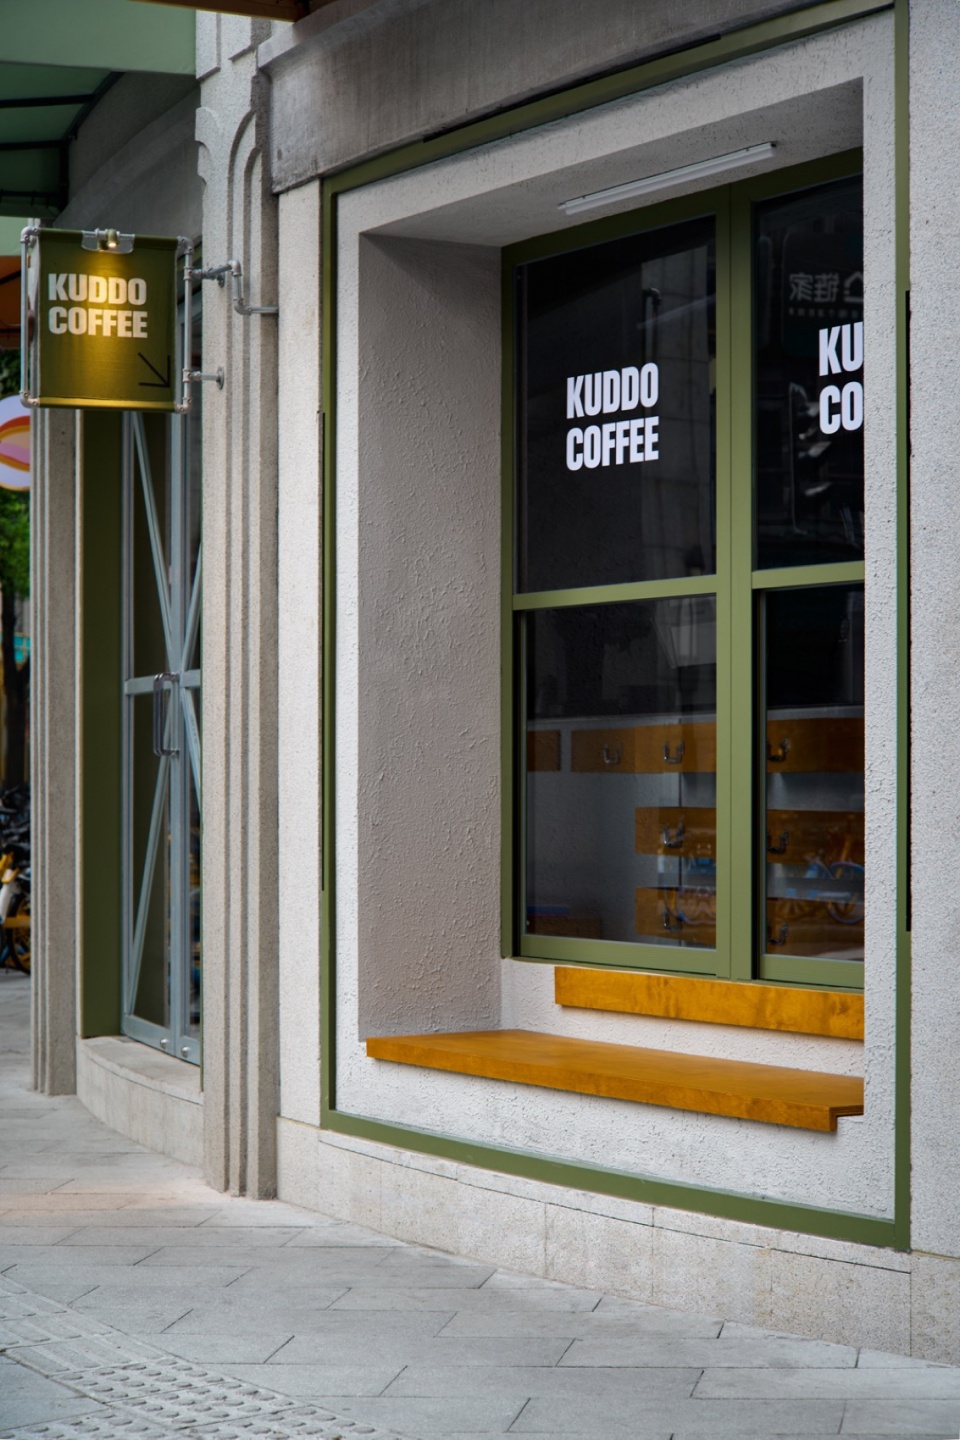 社區咖啡店設計,咖啡店設計,咖啡店設計案例,咖啡店設計方案,茶飲店設計,小咖啡店設計,KUDDO coffee,上海,KUDDO咖啡鴻壽坊店,敘室設計